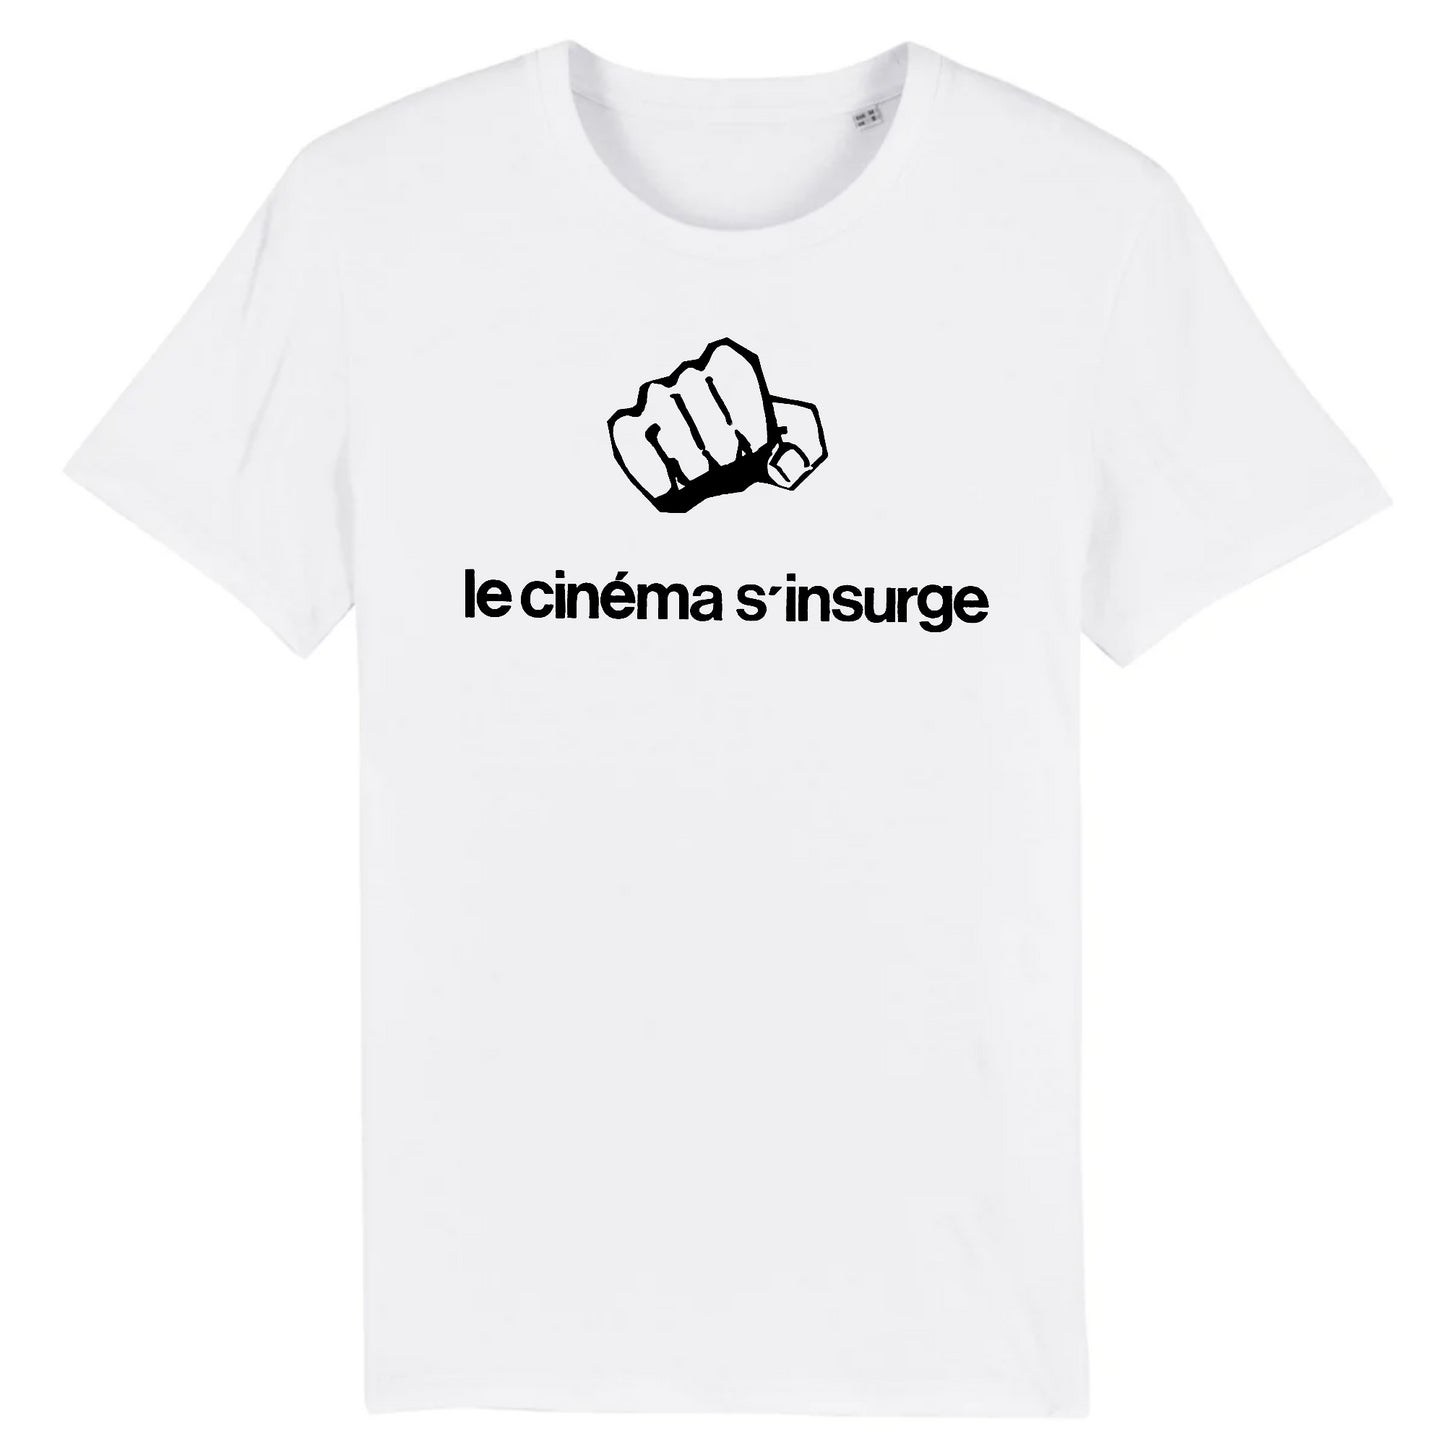 Cinema S'Insurge (Cinema Rises Up), affiche réalisée par des étudiants radicaux en cinéma des universités parisiennes au lendemain des bouleversements de mai 1968 - T-shirt en coton biologique